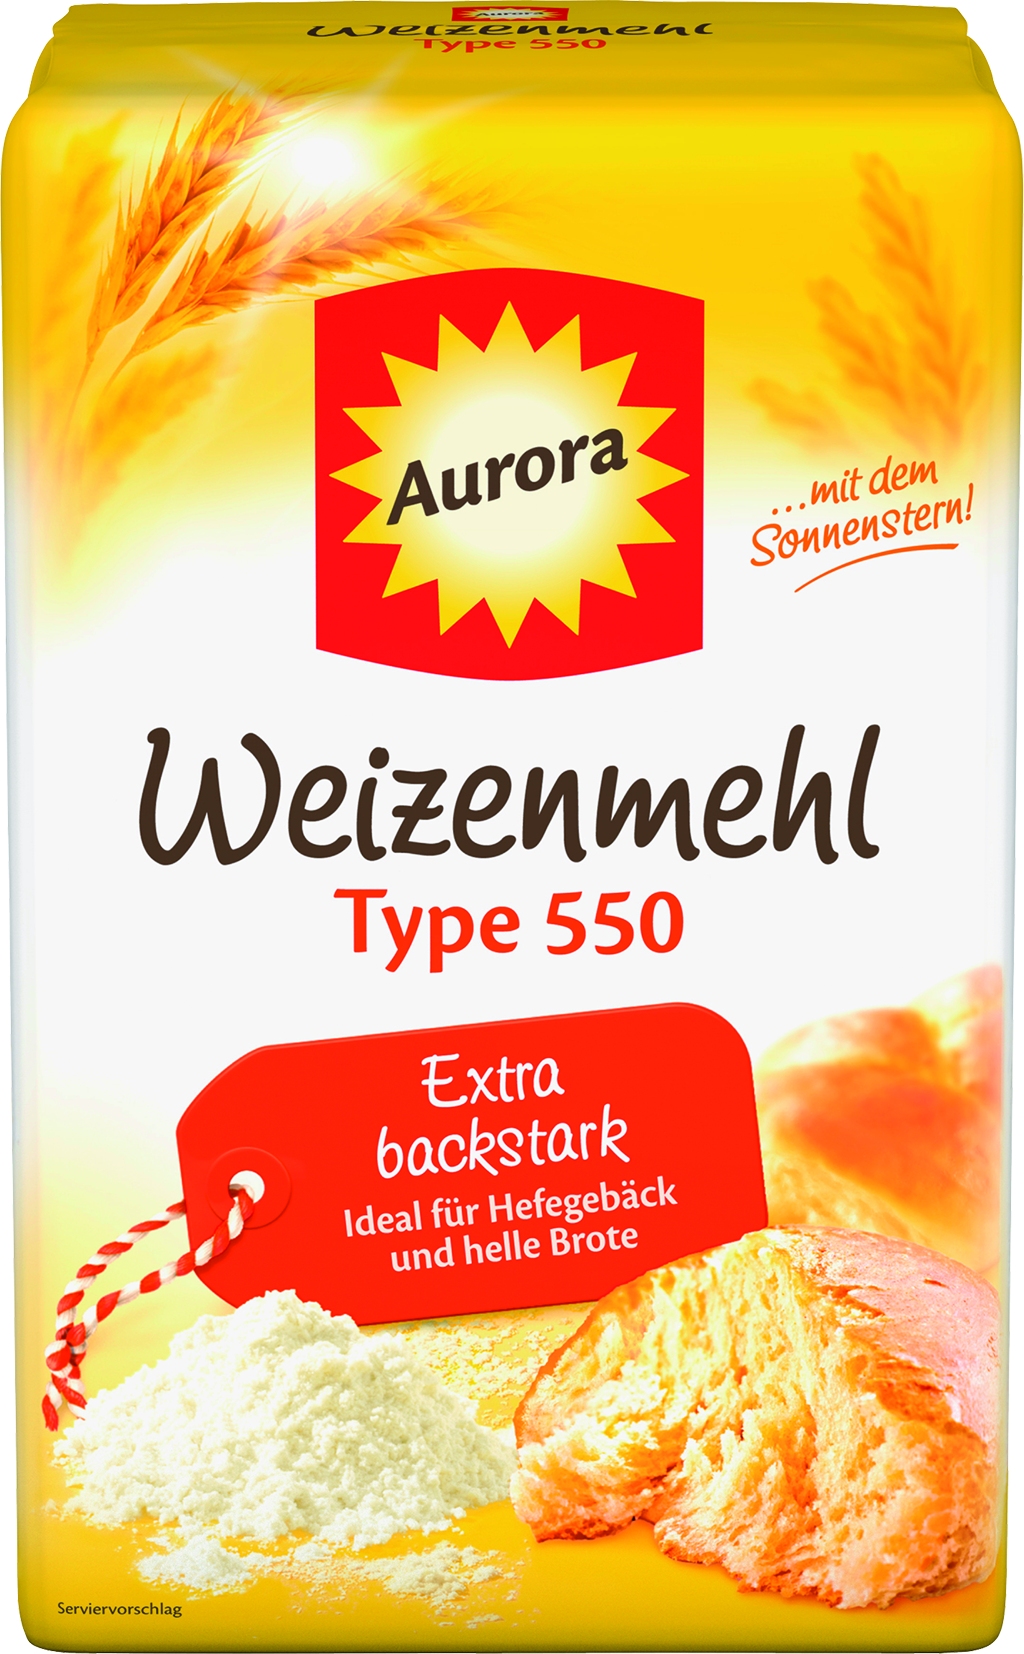 wheat flour type 550